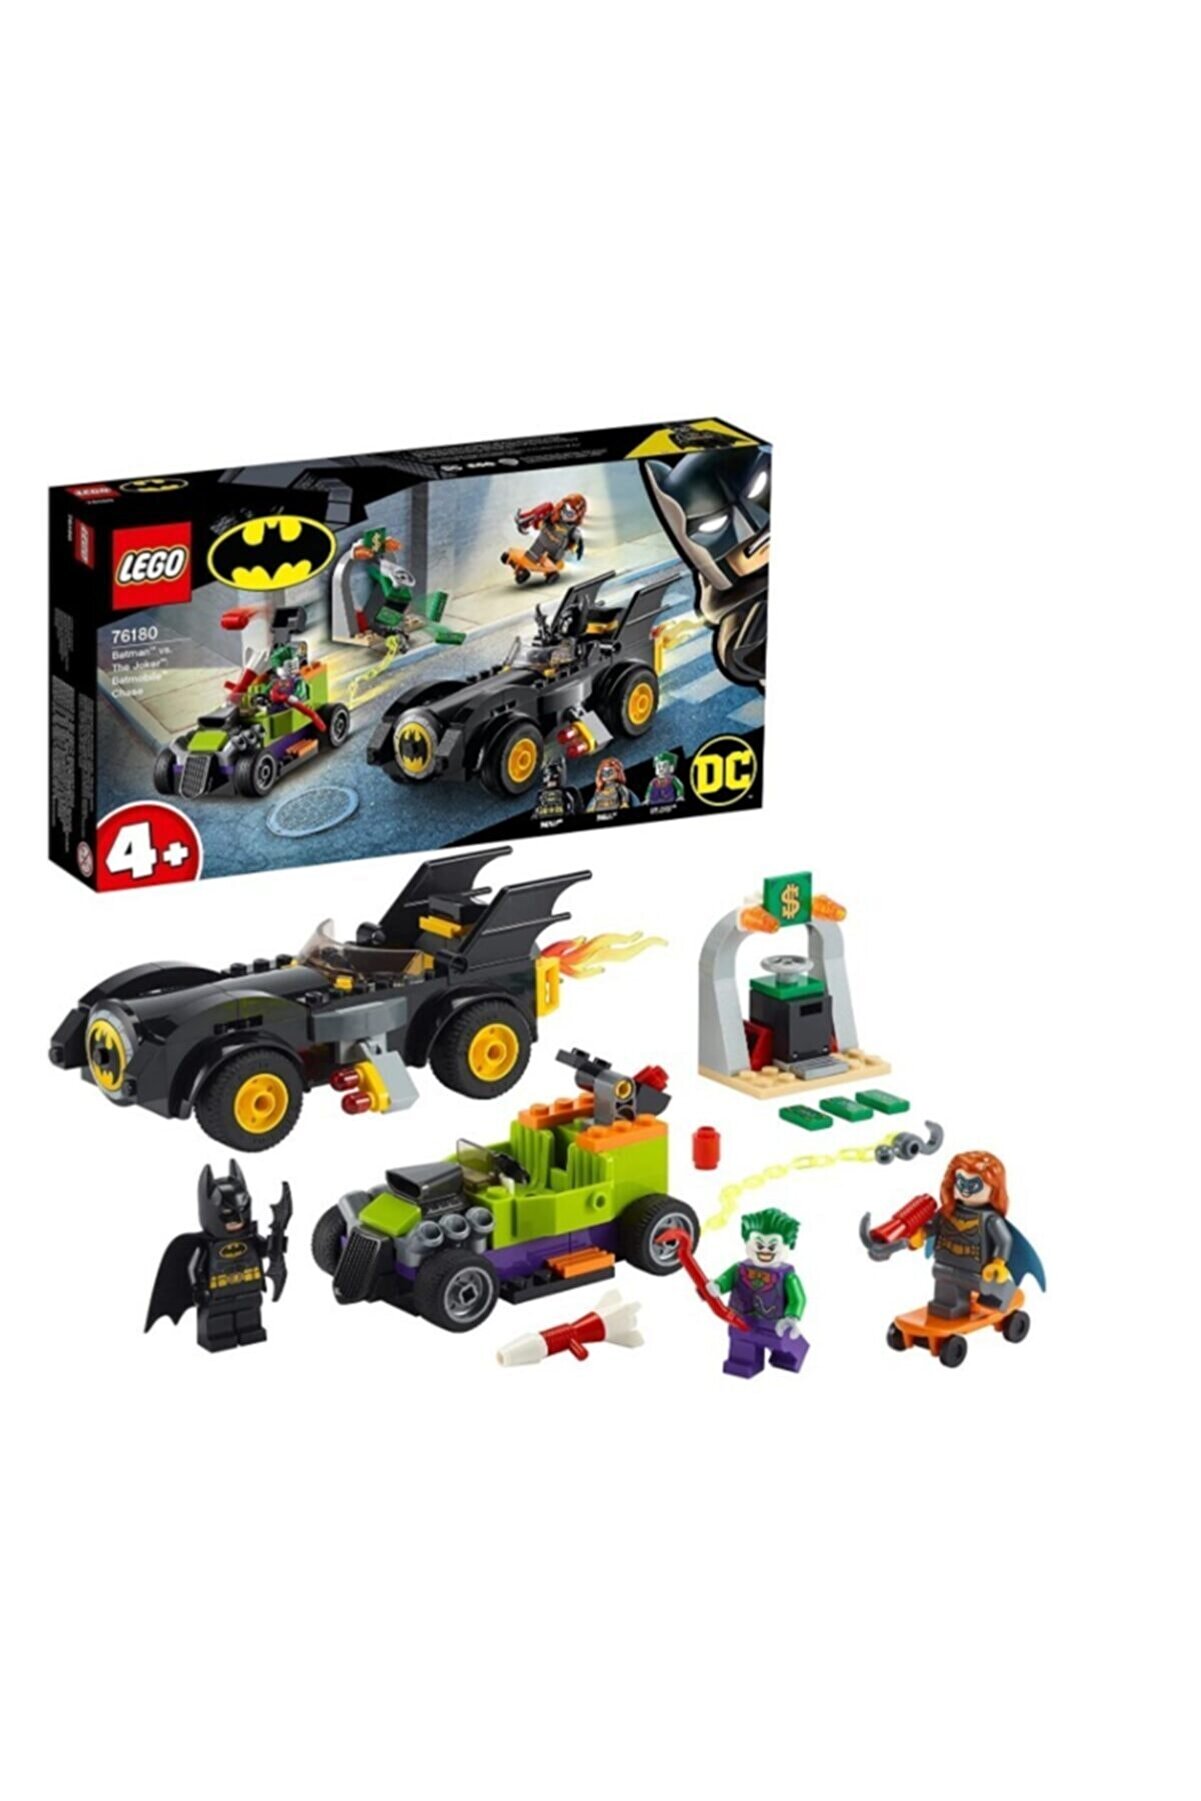 LEGO DC Batman Joker’e Karşı: Batmobil Takibi 76180; Batmobil ve Hot Rod Oyuncağı Yapım Seti (136 Parça)